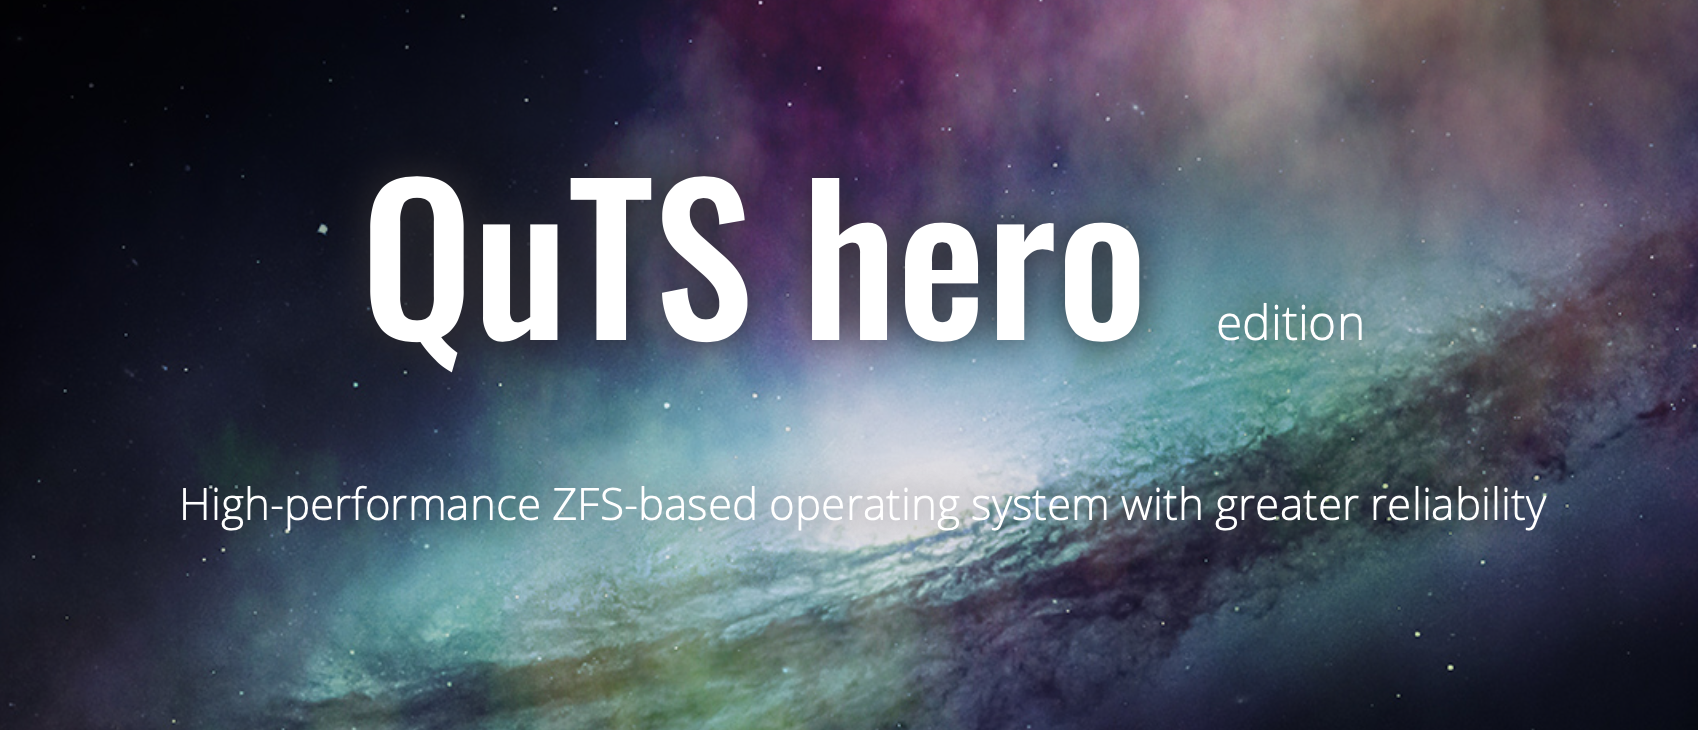 QuTS hero h4.5.1